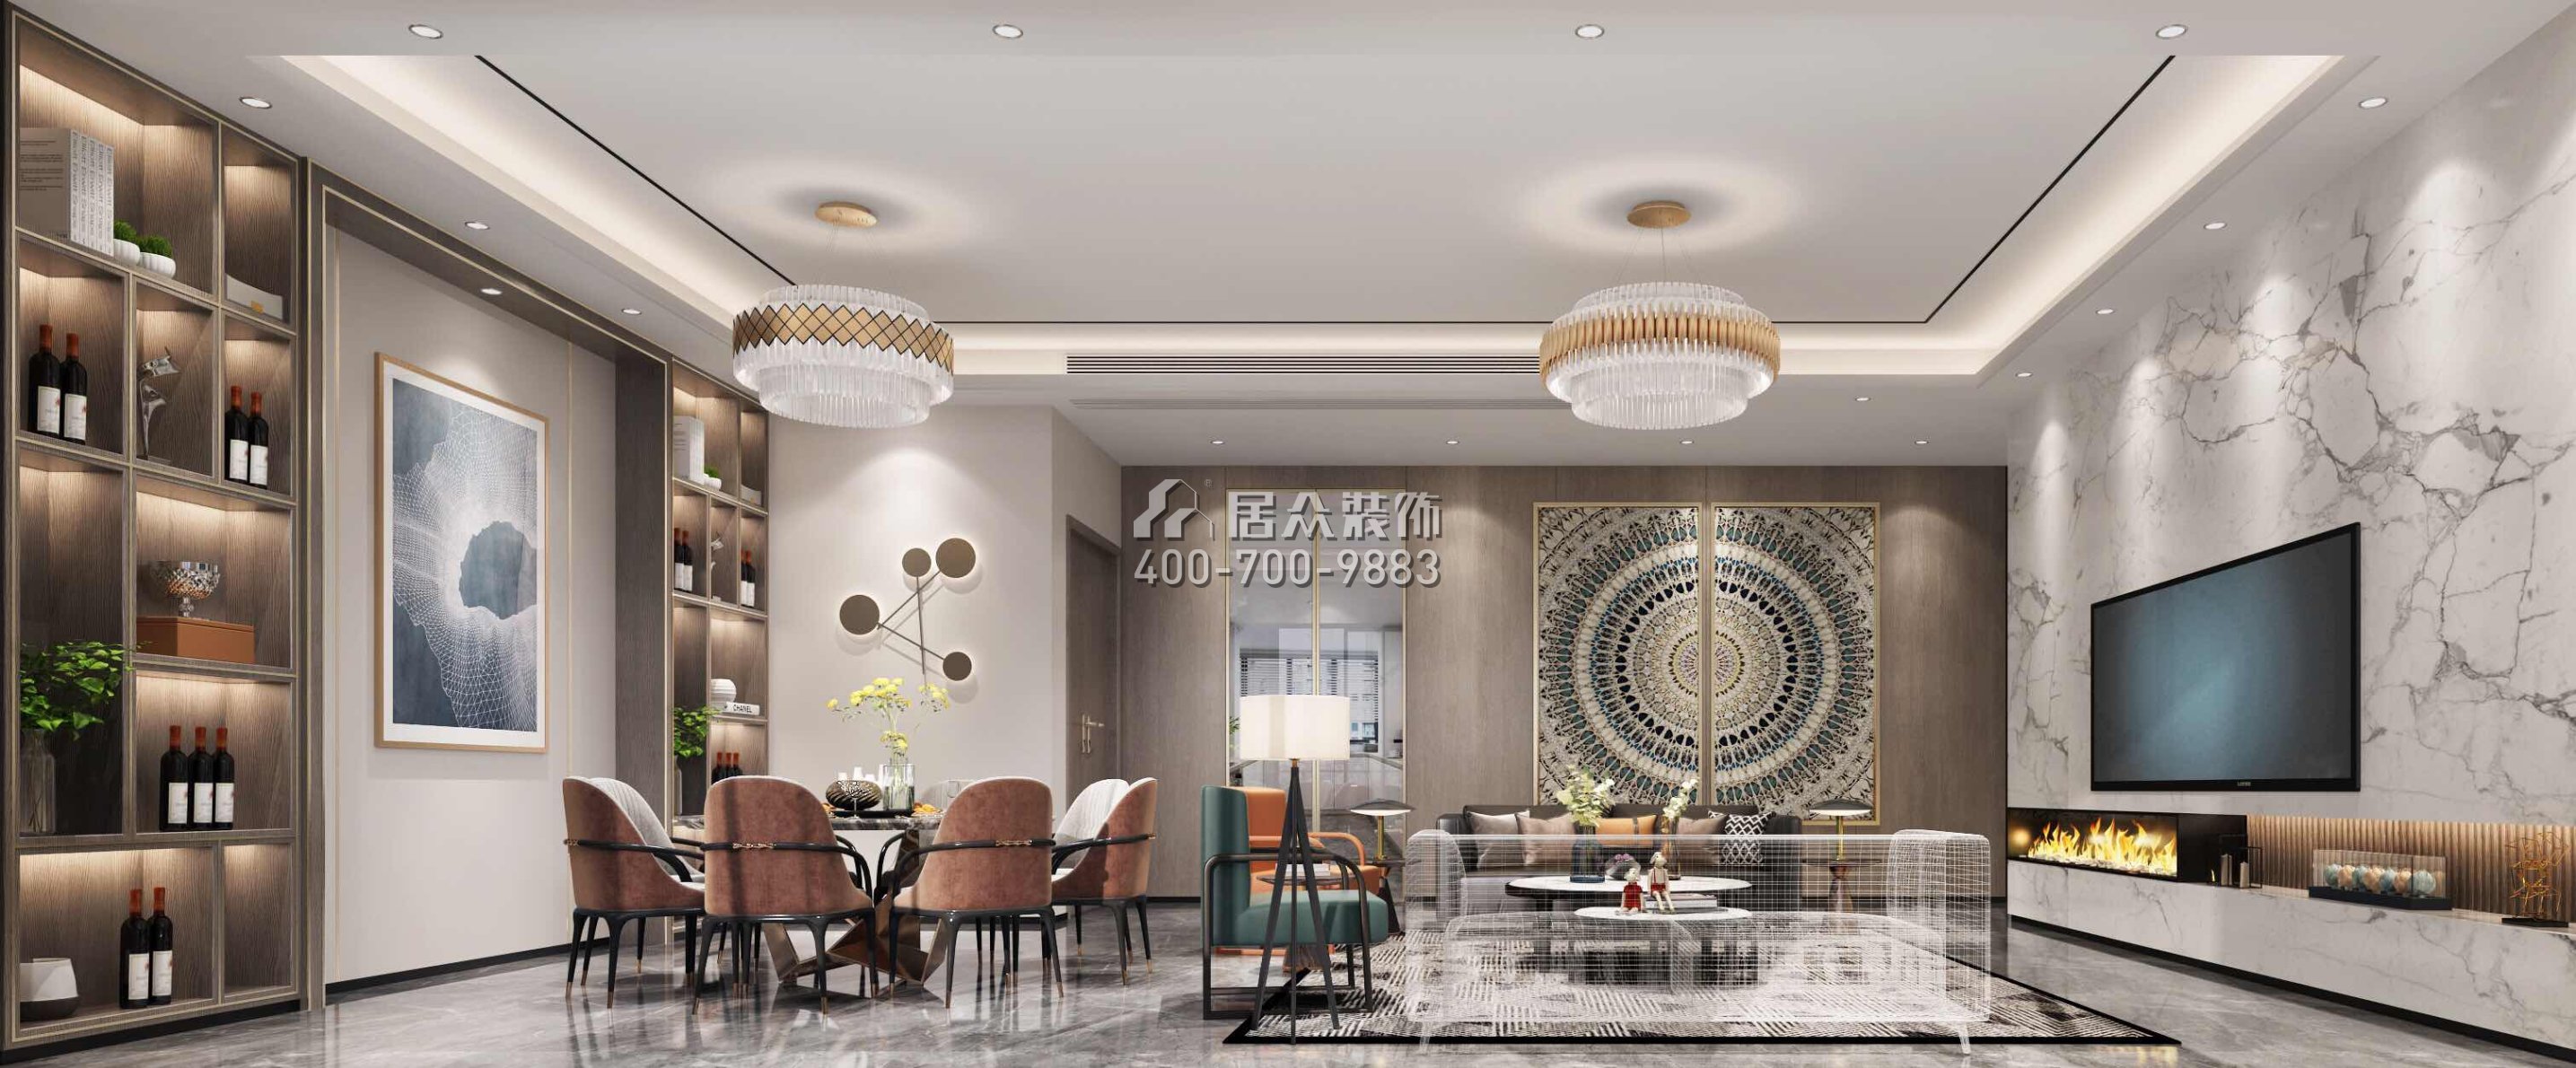 萬科皇馬酈宮241平方米現代簡約風格平層戶型客餐廳一體裝修效果圖